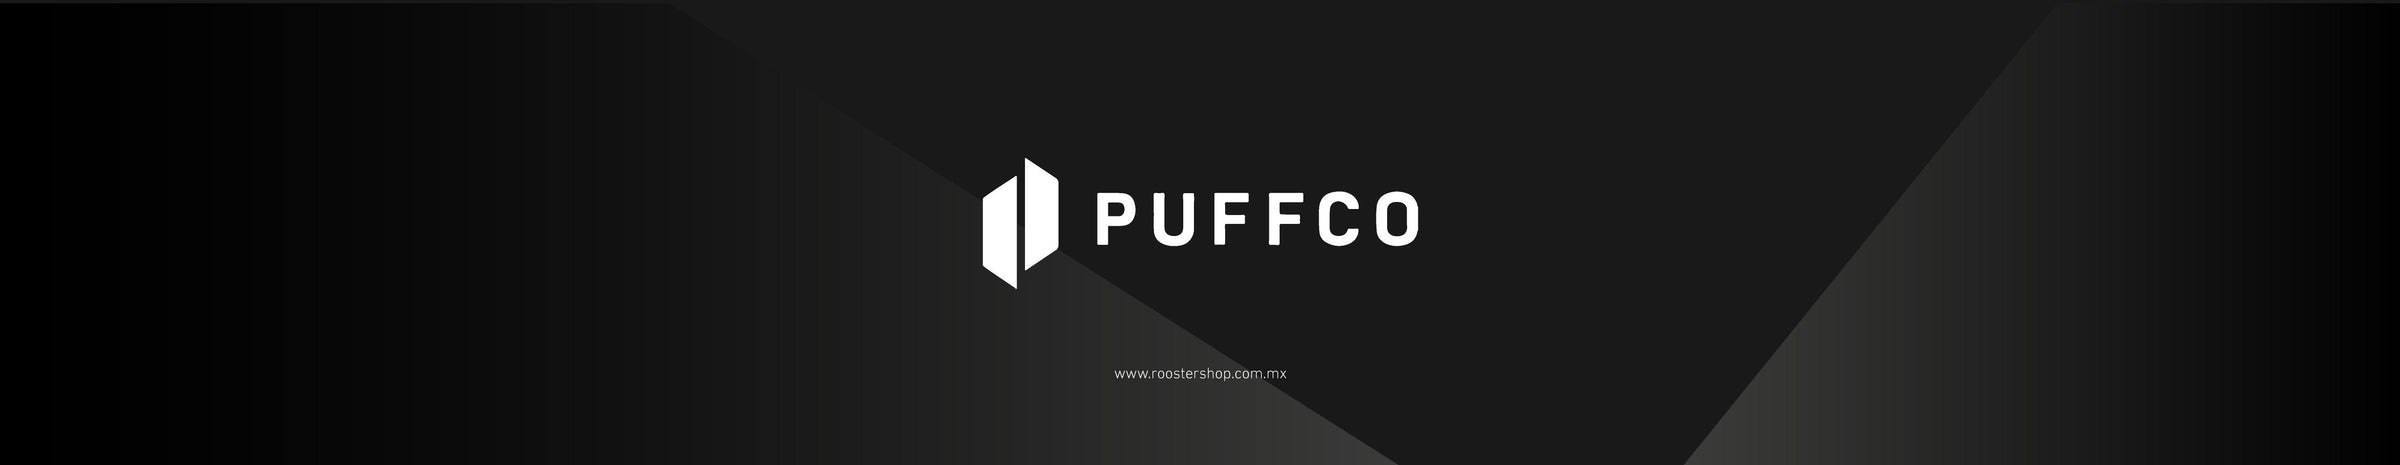 Puffco Mexico Distribuidor Oficial Repuestos y Accesorios